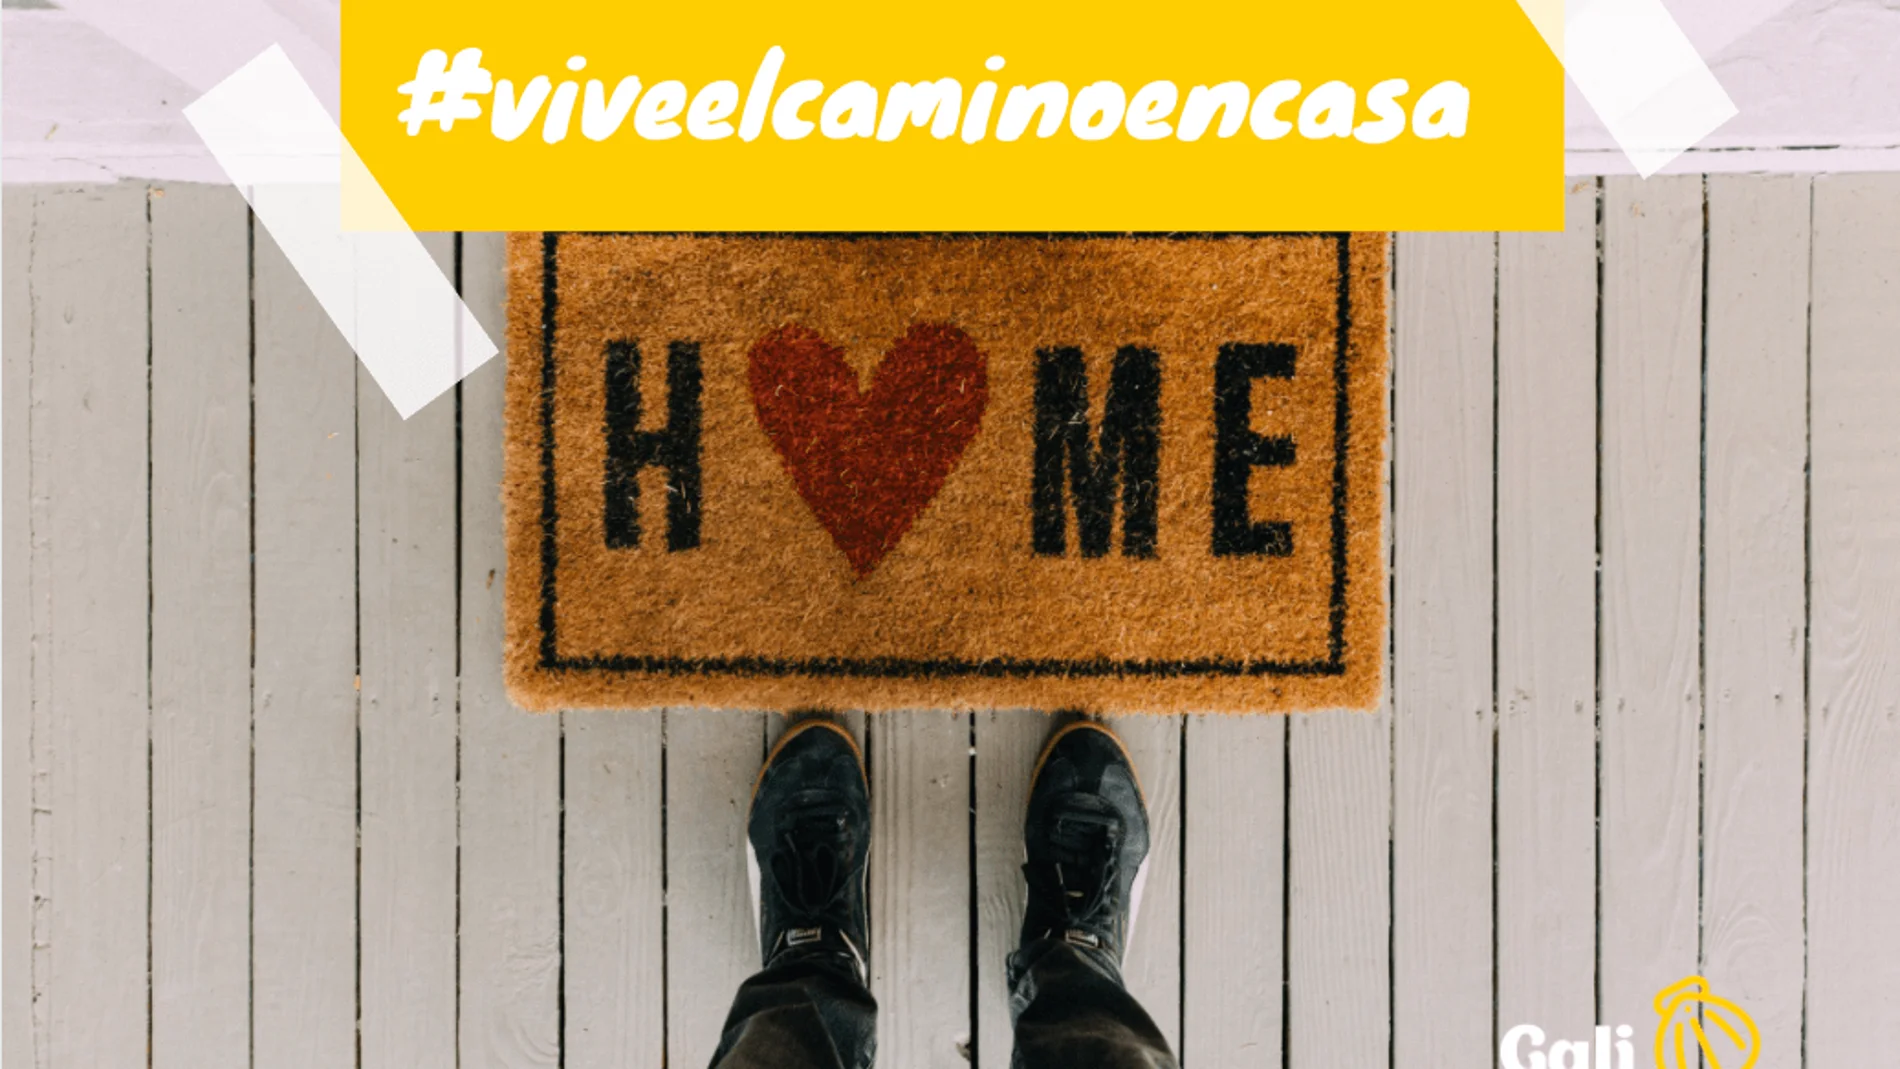 Mediante el hashtag #viveelcaminoencasa, la Agencia comparte cada día un vídeo personal en sus redes sociales, de peregrinos que han hecho o han tenido que posponer su Camino de Santiago.